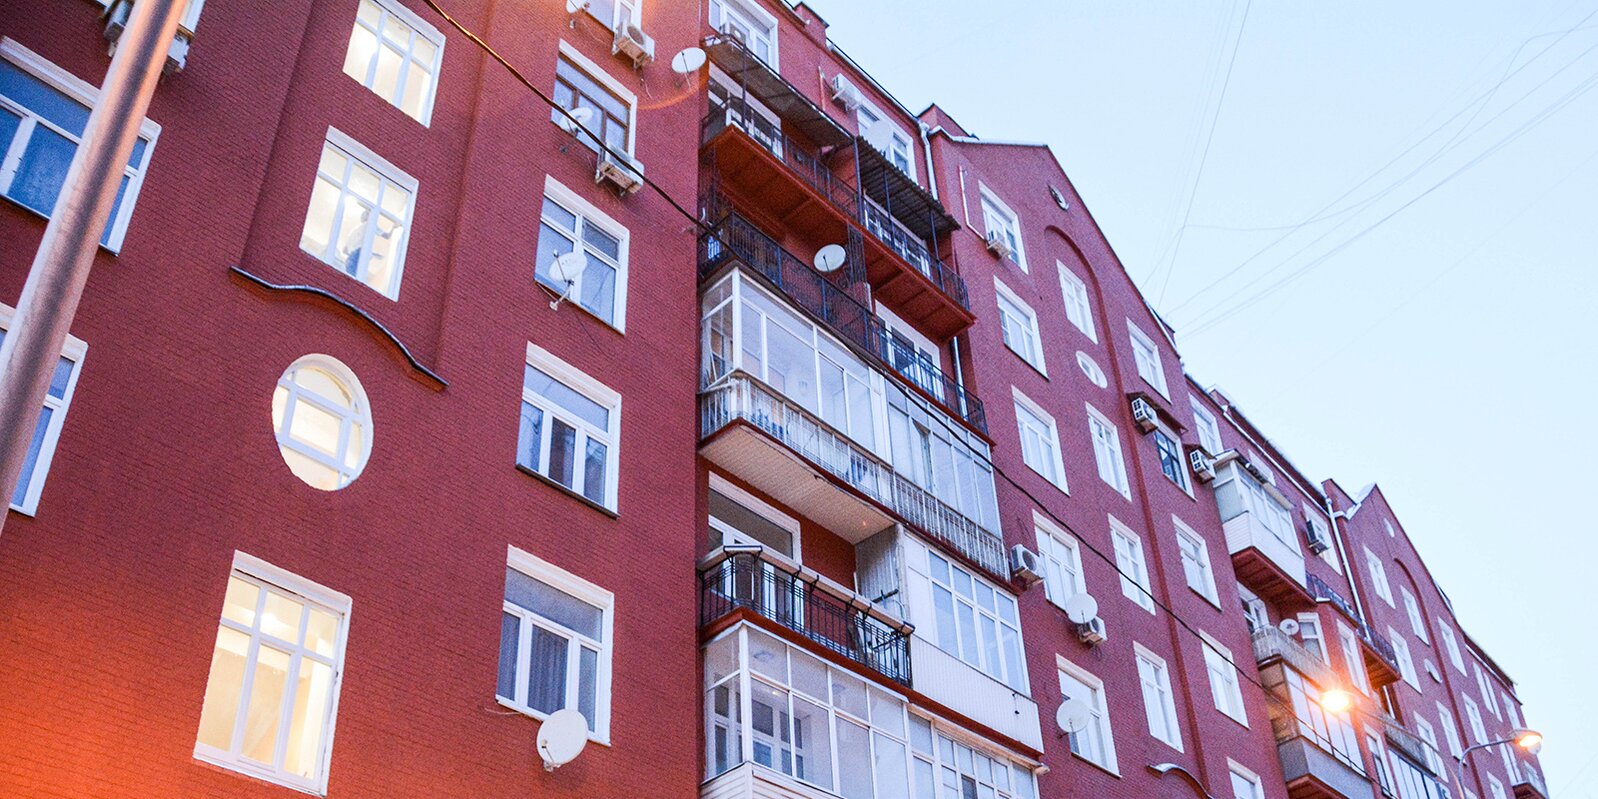 Специалисты завершают капитальный ремонт здания в Красносельском районе. Фото: сайт мэра Москвы